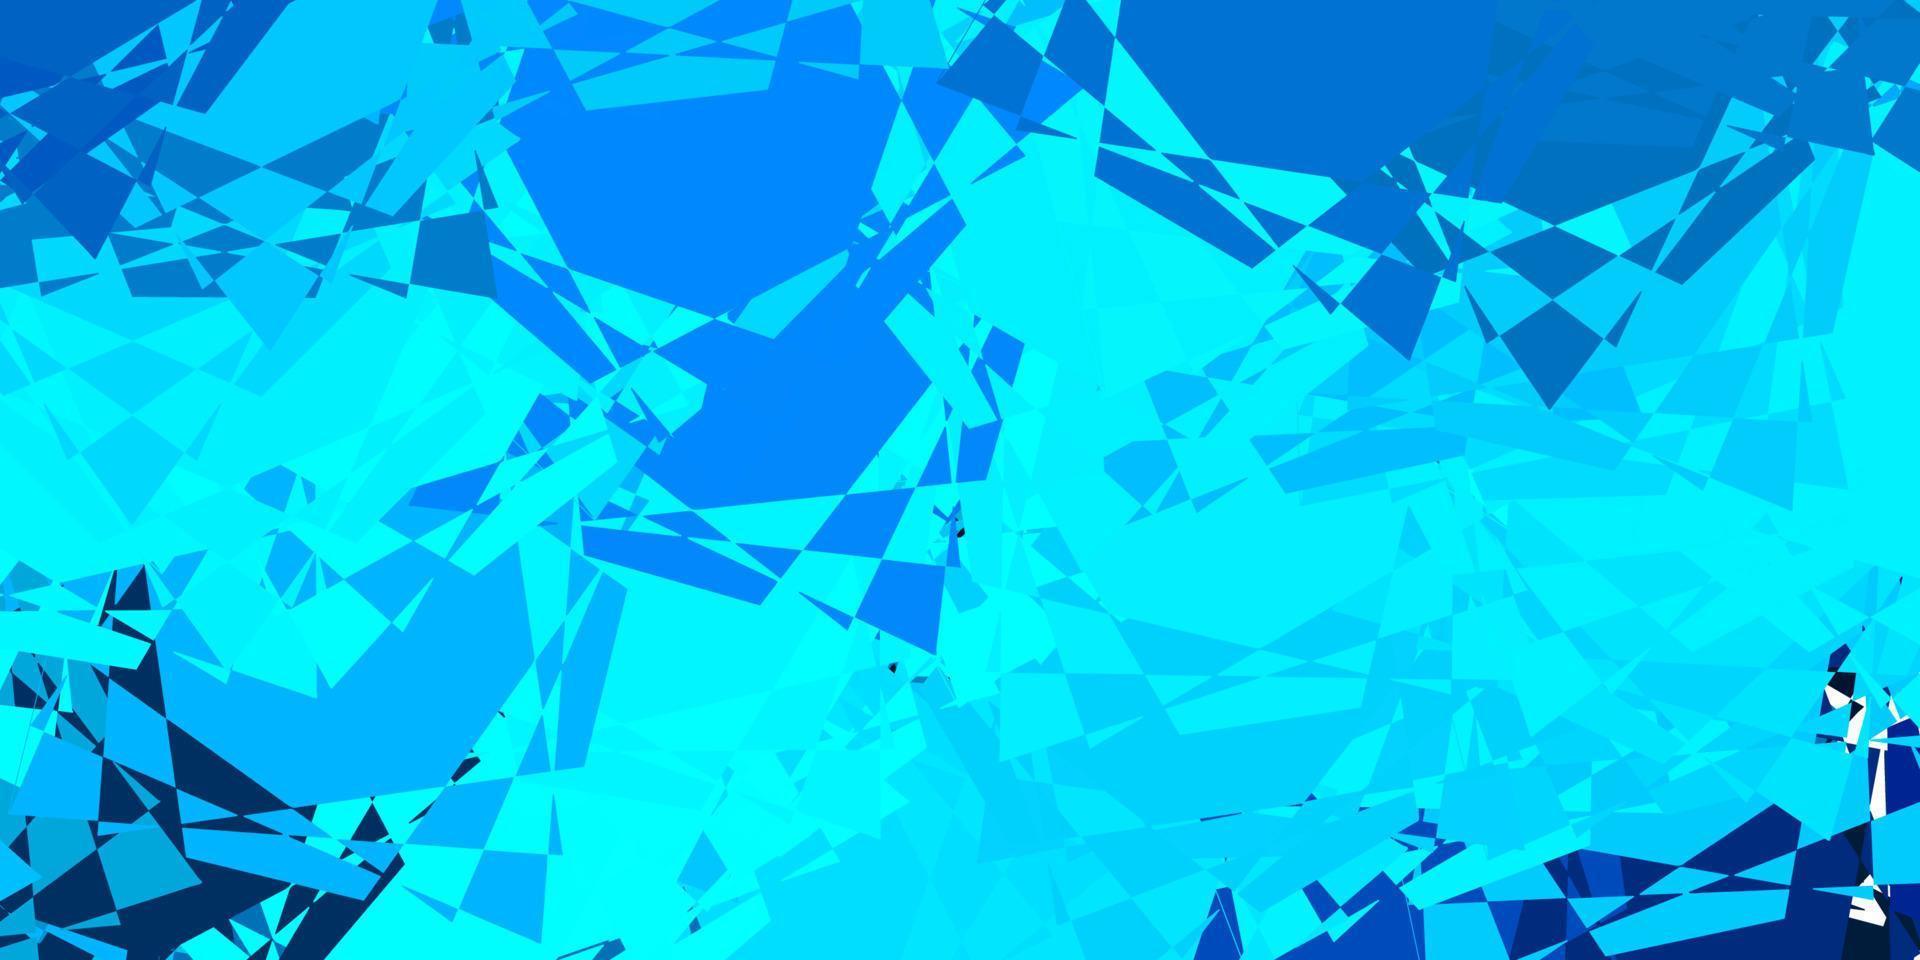 fundo vector azul claro com formas poligonais.